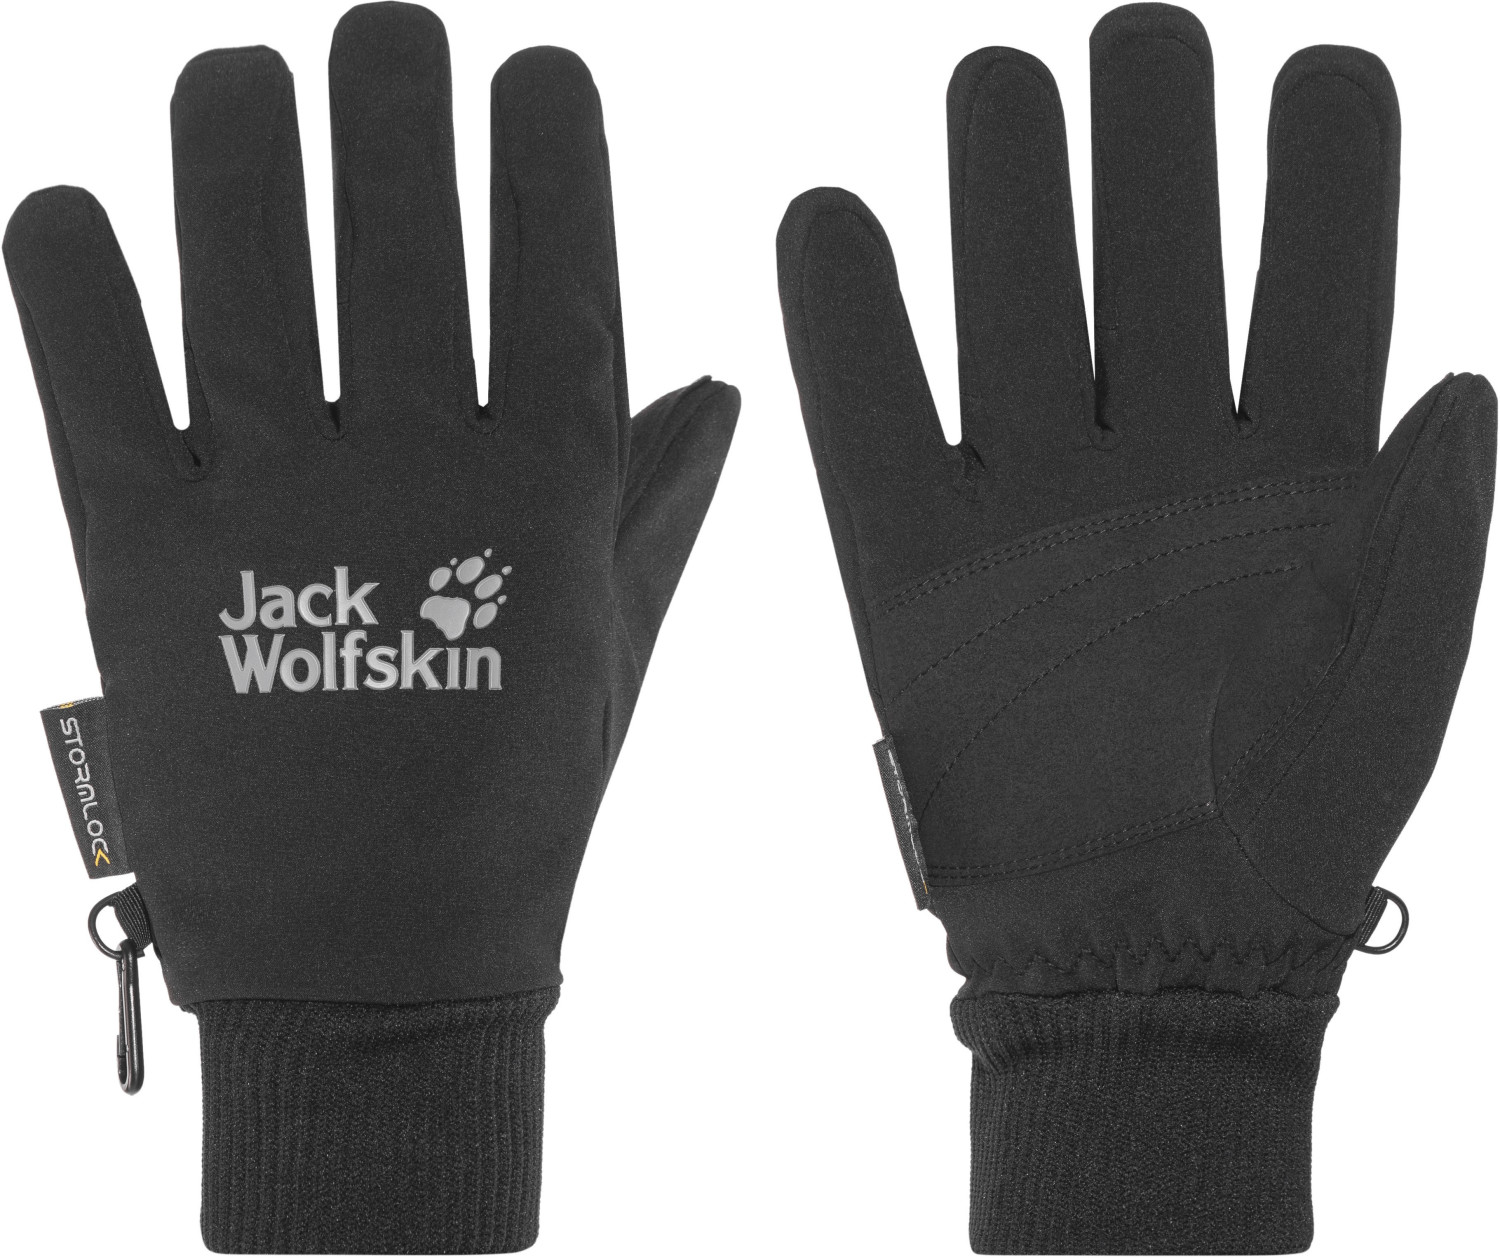 Jack Wolfskin bei Preisvergleich XT € 44,85 | Supersonic Glove ab